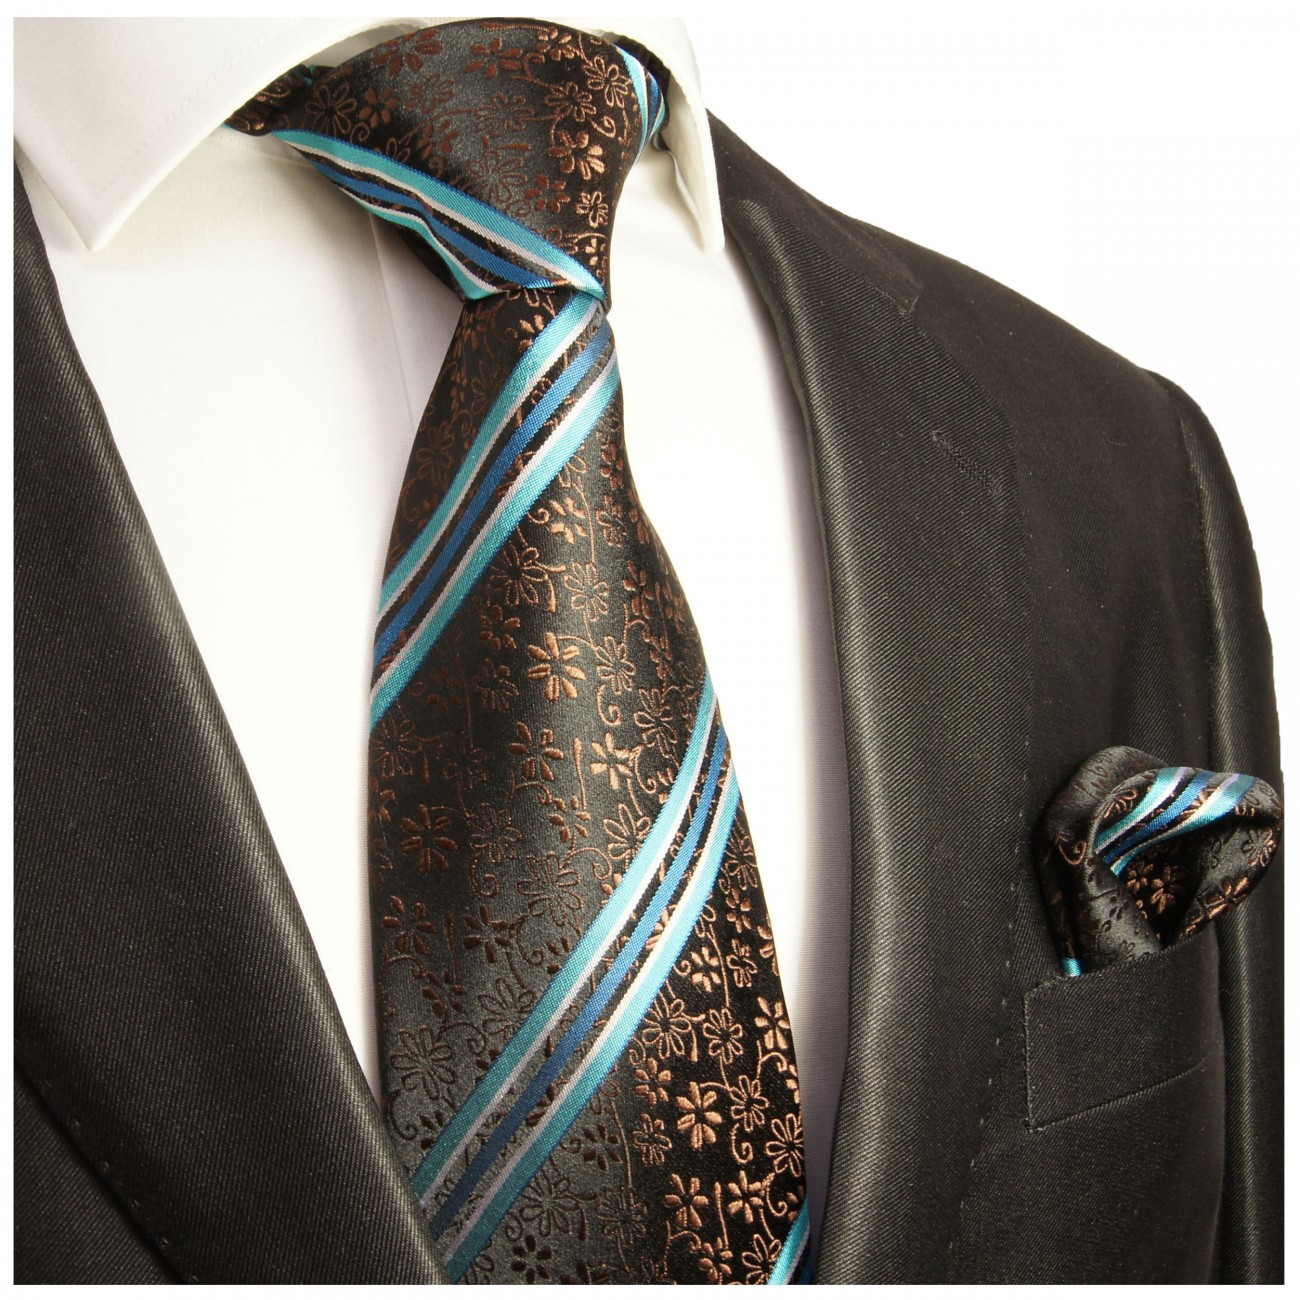 Extra lange Krawatte 165cm - Krawatte türkis braun floral gestreift